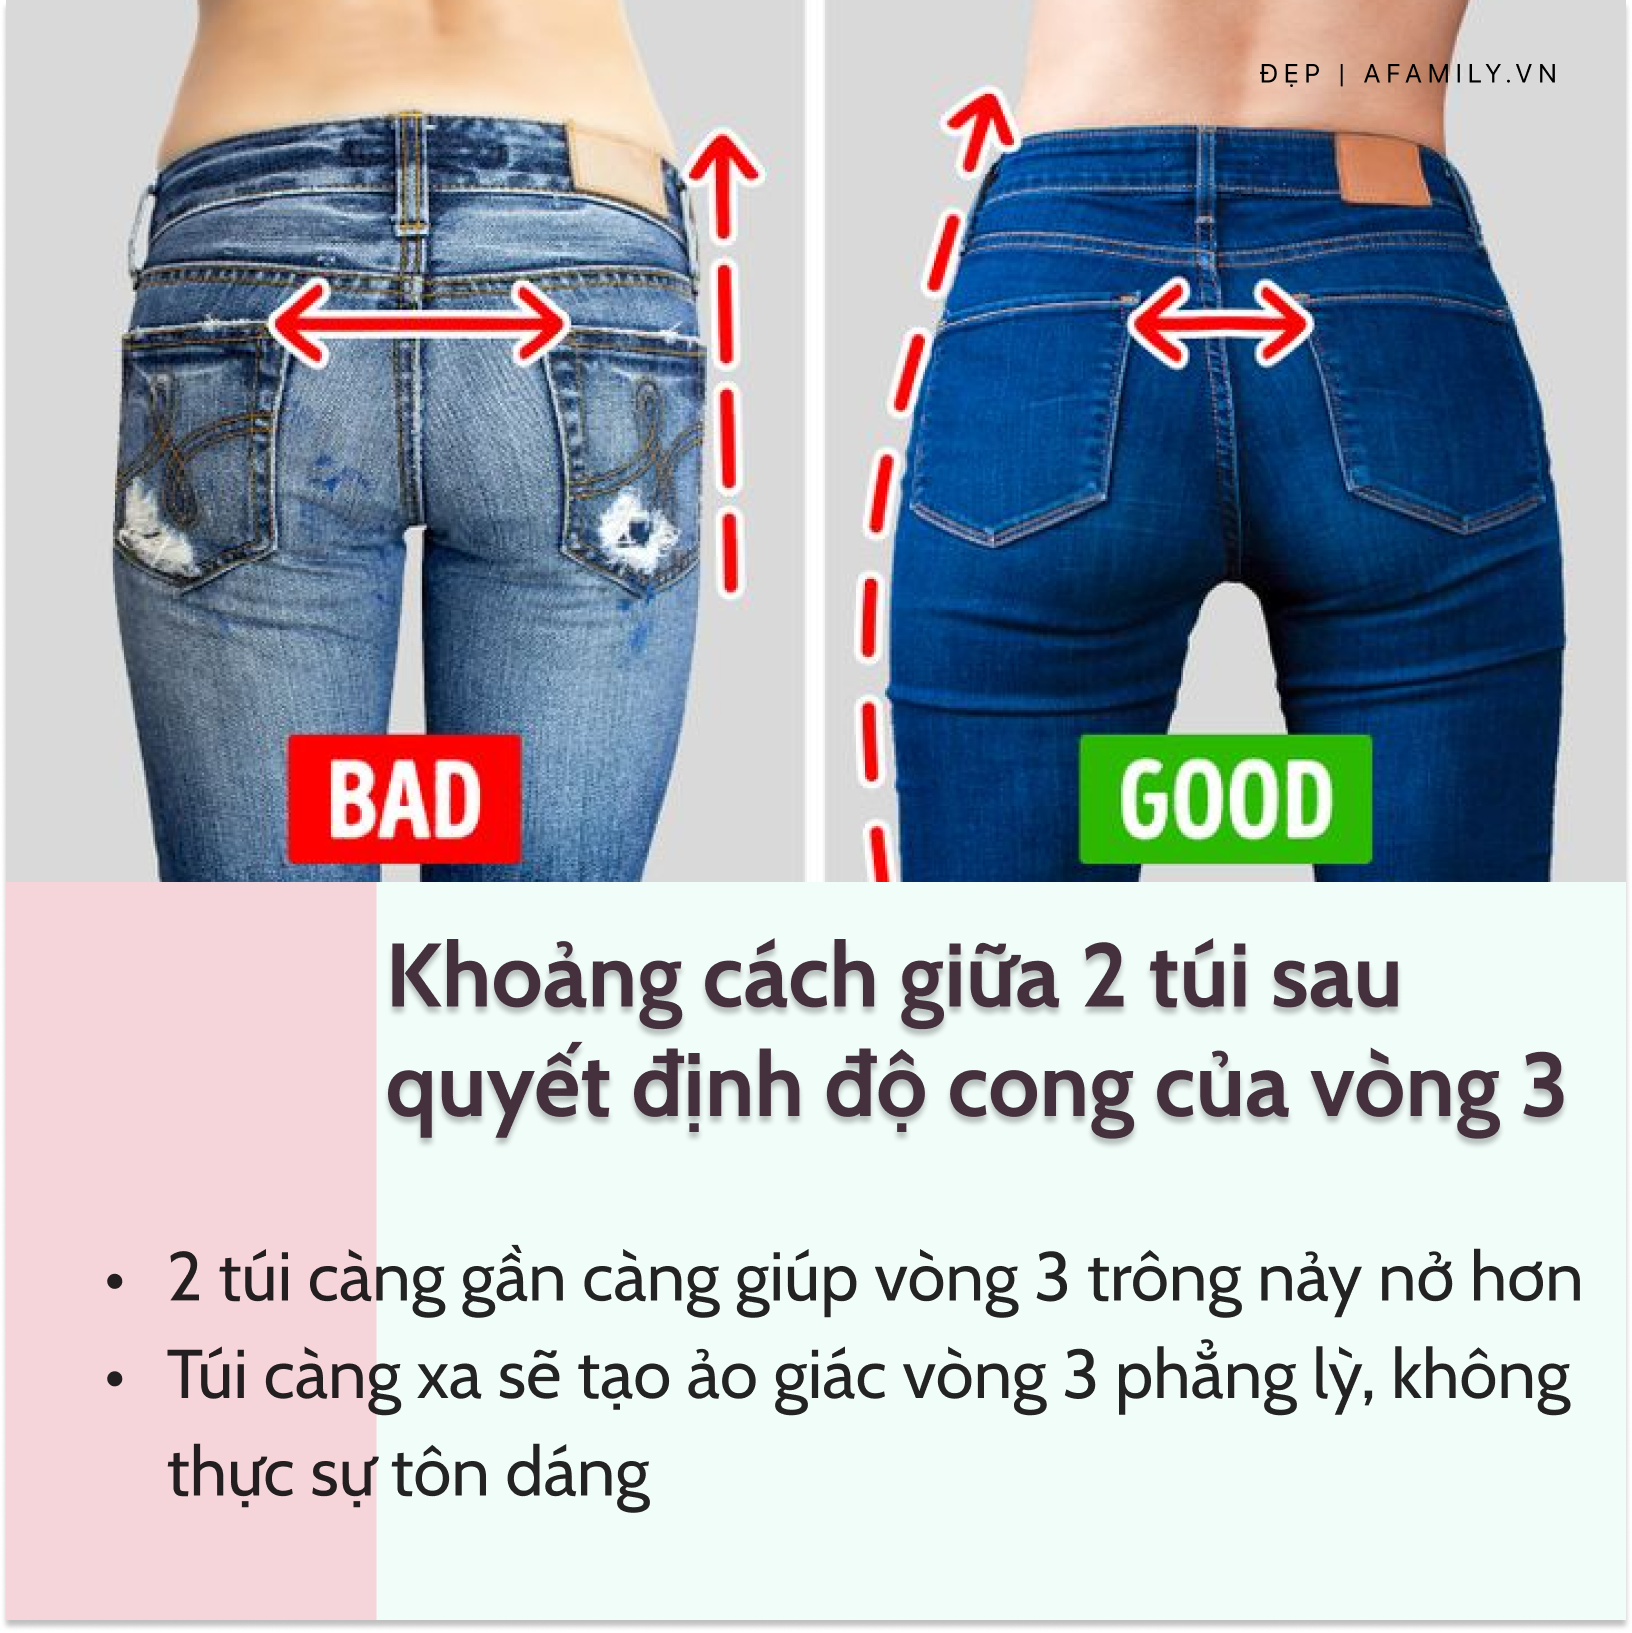 Nàng vòng 3 lép kẹp cần chỉ cần mua quần jeans có chi tiết này là đảm bảo tôn dáng hiệu quả, sexy gấp bội - Ảnh 2.